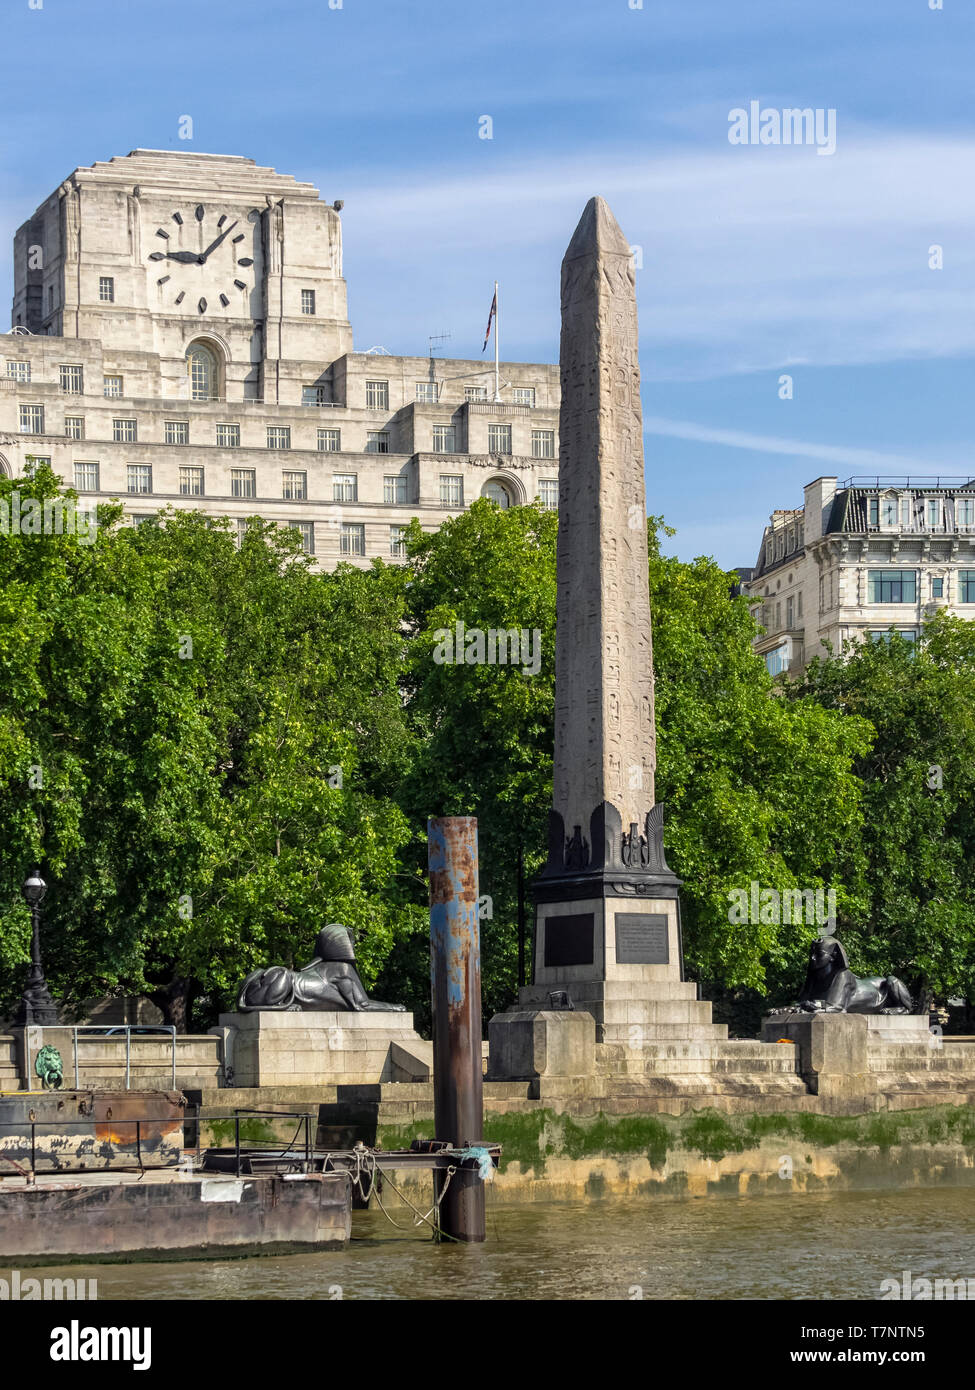 LONDON, Großbritannien - 04. JULI 2018: Victoria Embankment mit Cleopatras Nadel von der Themse aus gesehen mit Shell Mex Gebäude im Hintergrund mit Uhr Stockfoto